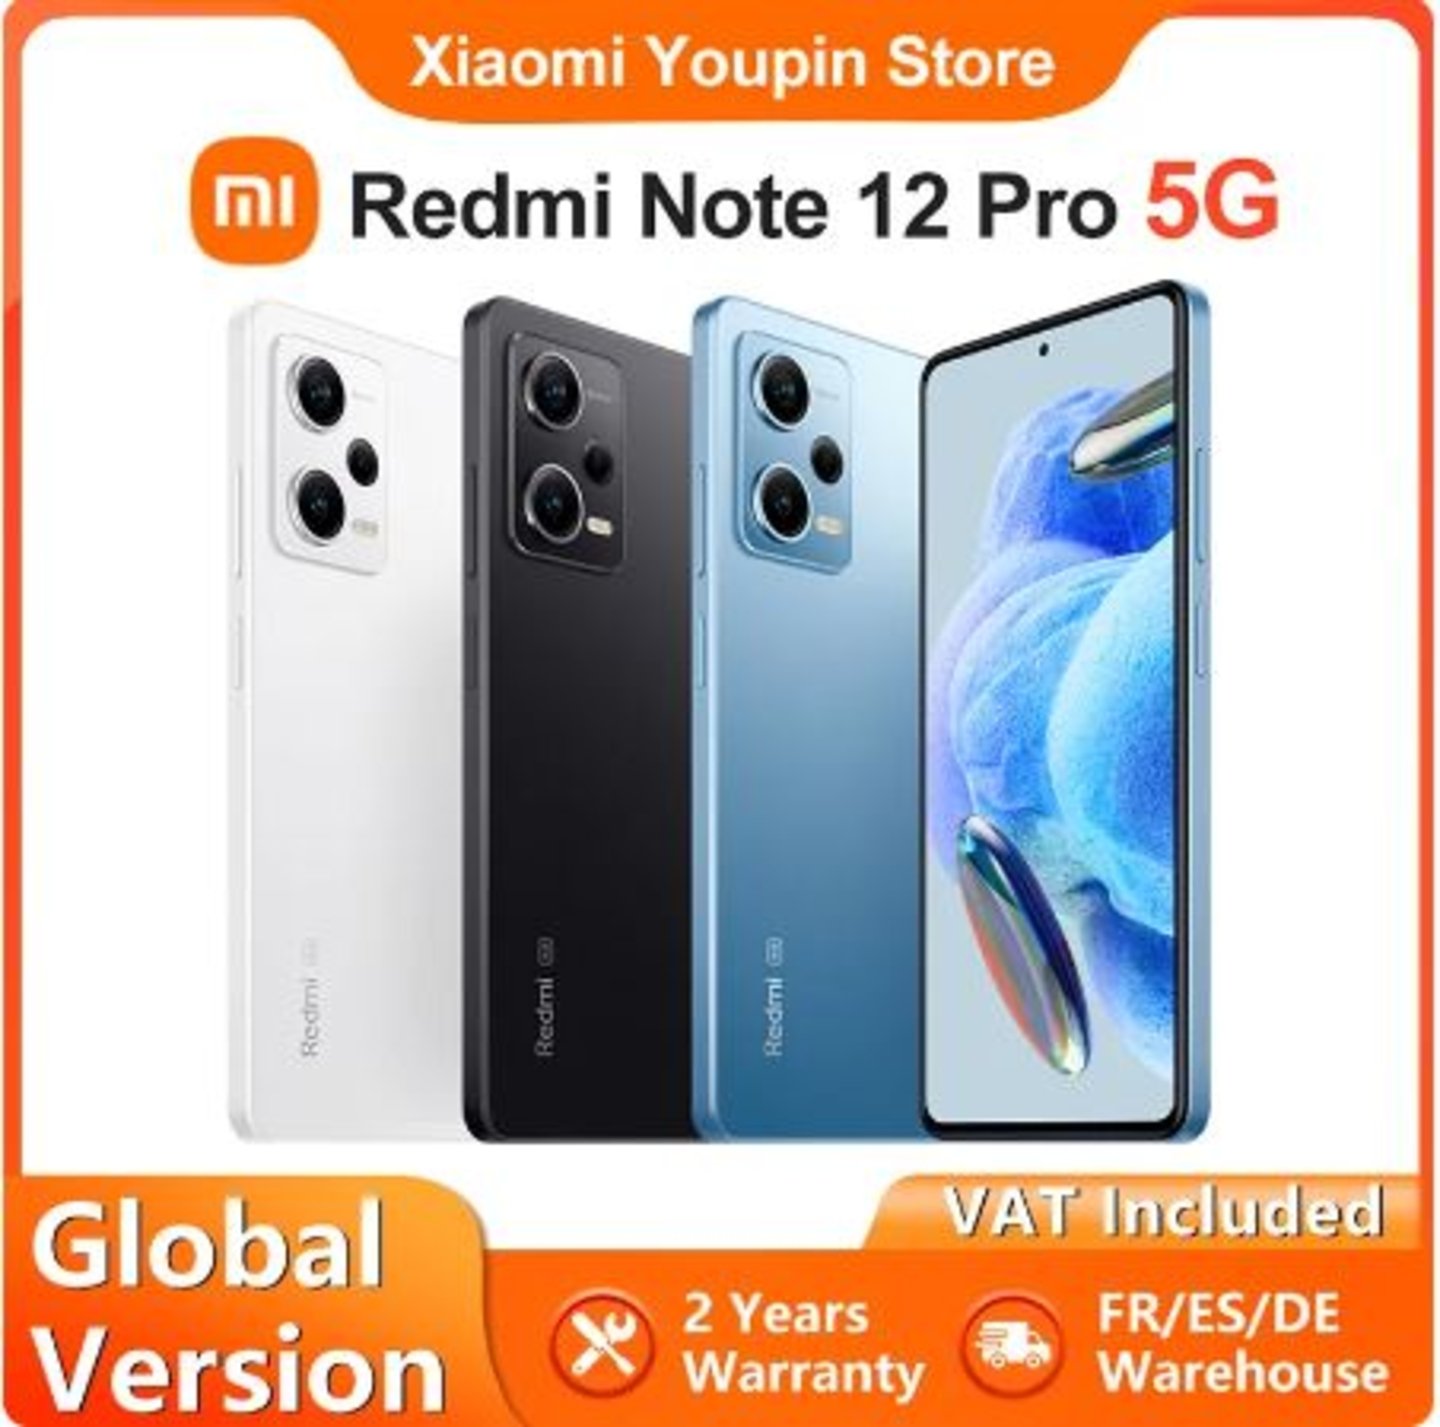 100 euros de rebaja para el nuevo Redmi Note 13 Pro 5G de Xiaomi